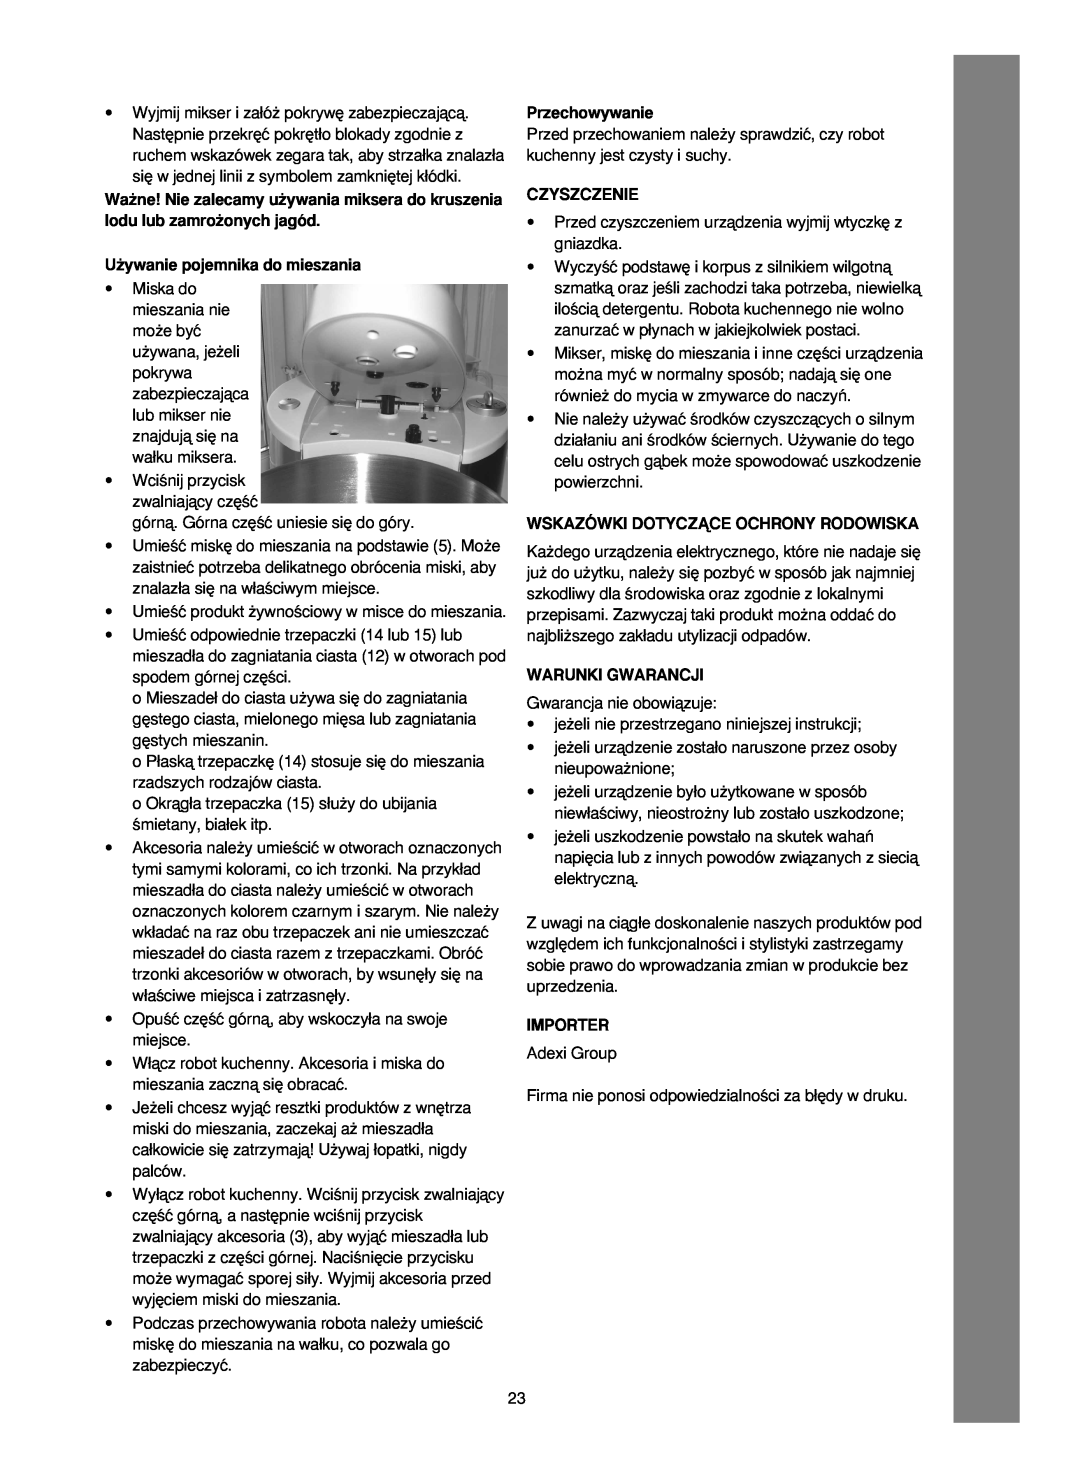 Melissa 246-016 manual U˝ywanie pojemnika do mieszania, Przechowywanie, Czyszczenie, Wskazówki Dotyczñce Ochrony Rodowiska 